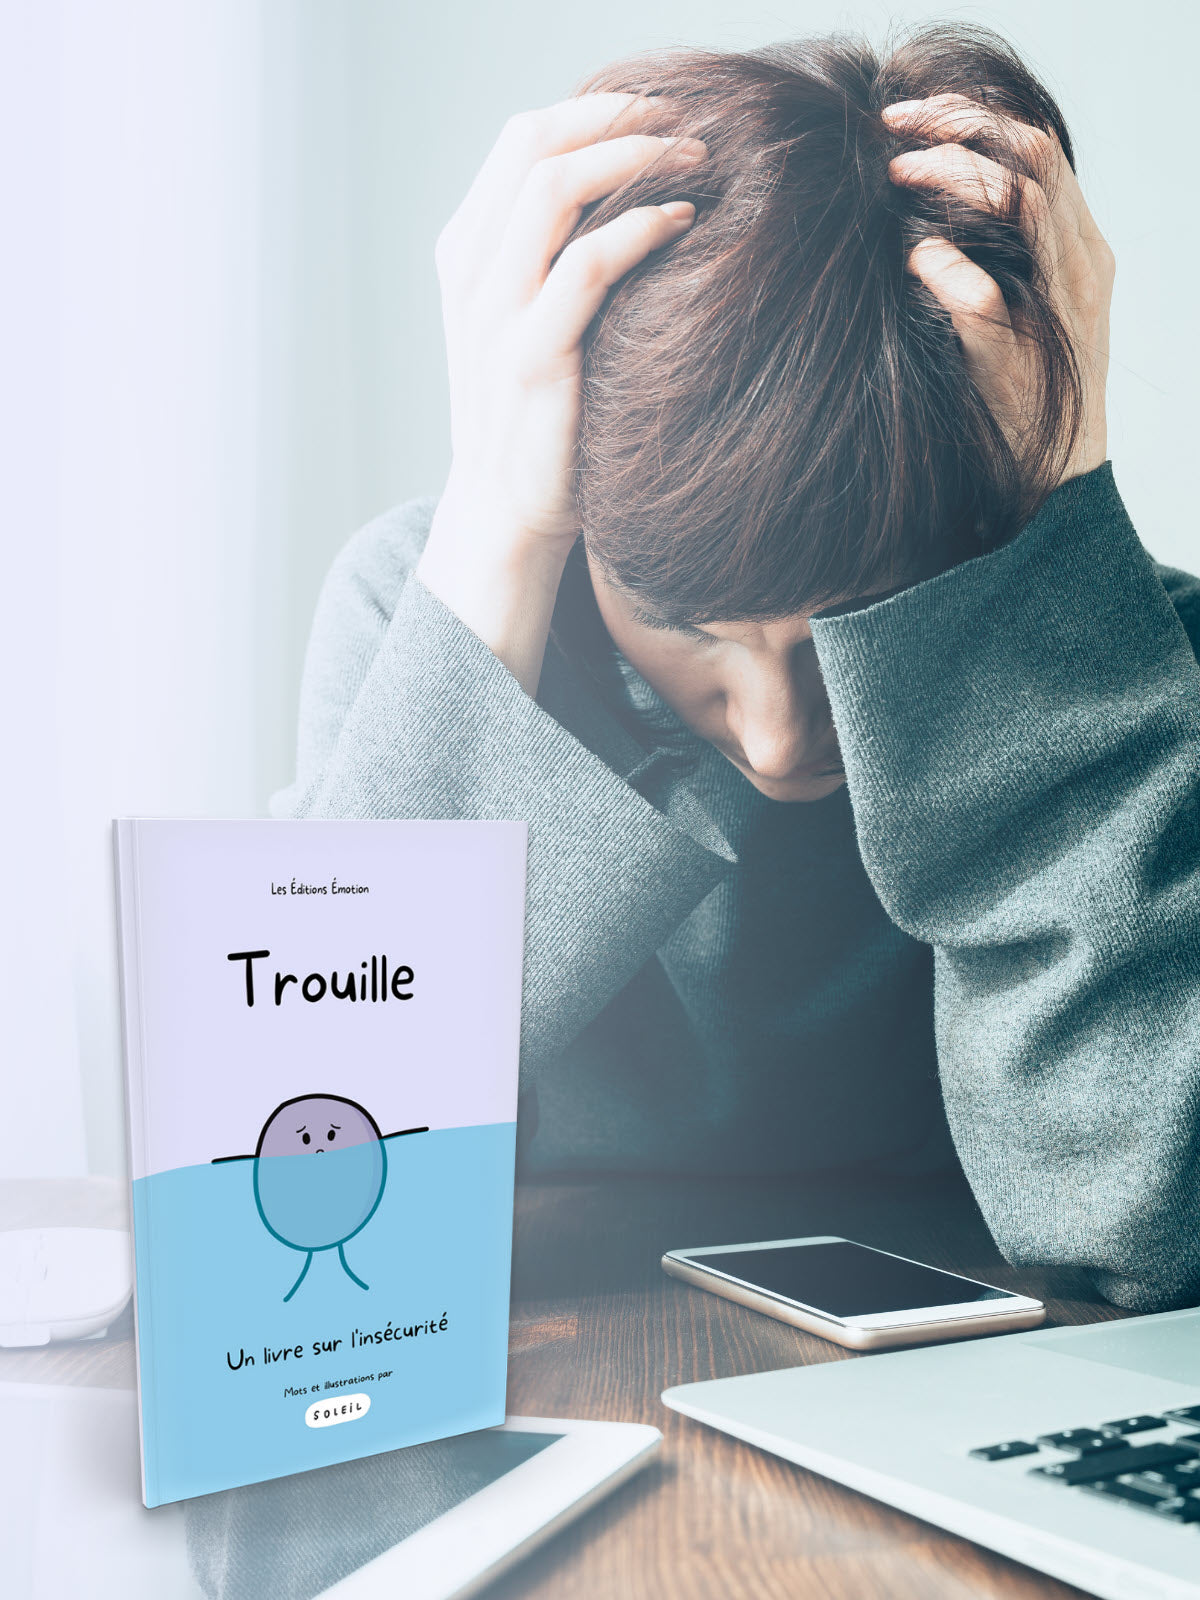 Trouille - Un livre sur l'insécurité | Les Éditions Émotion 